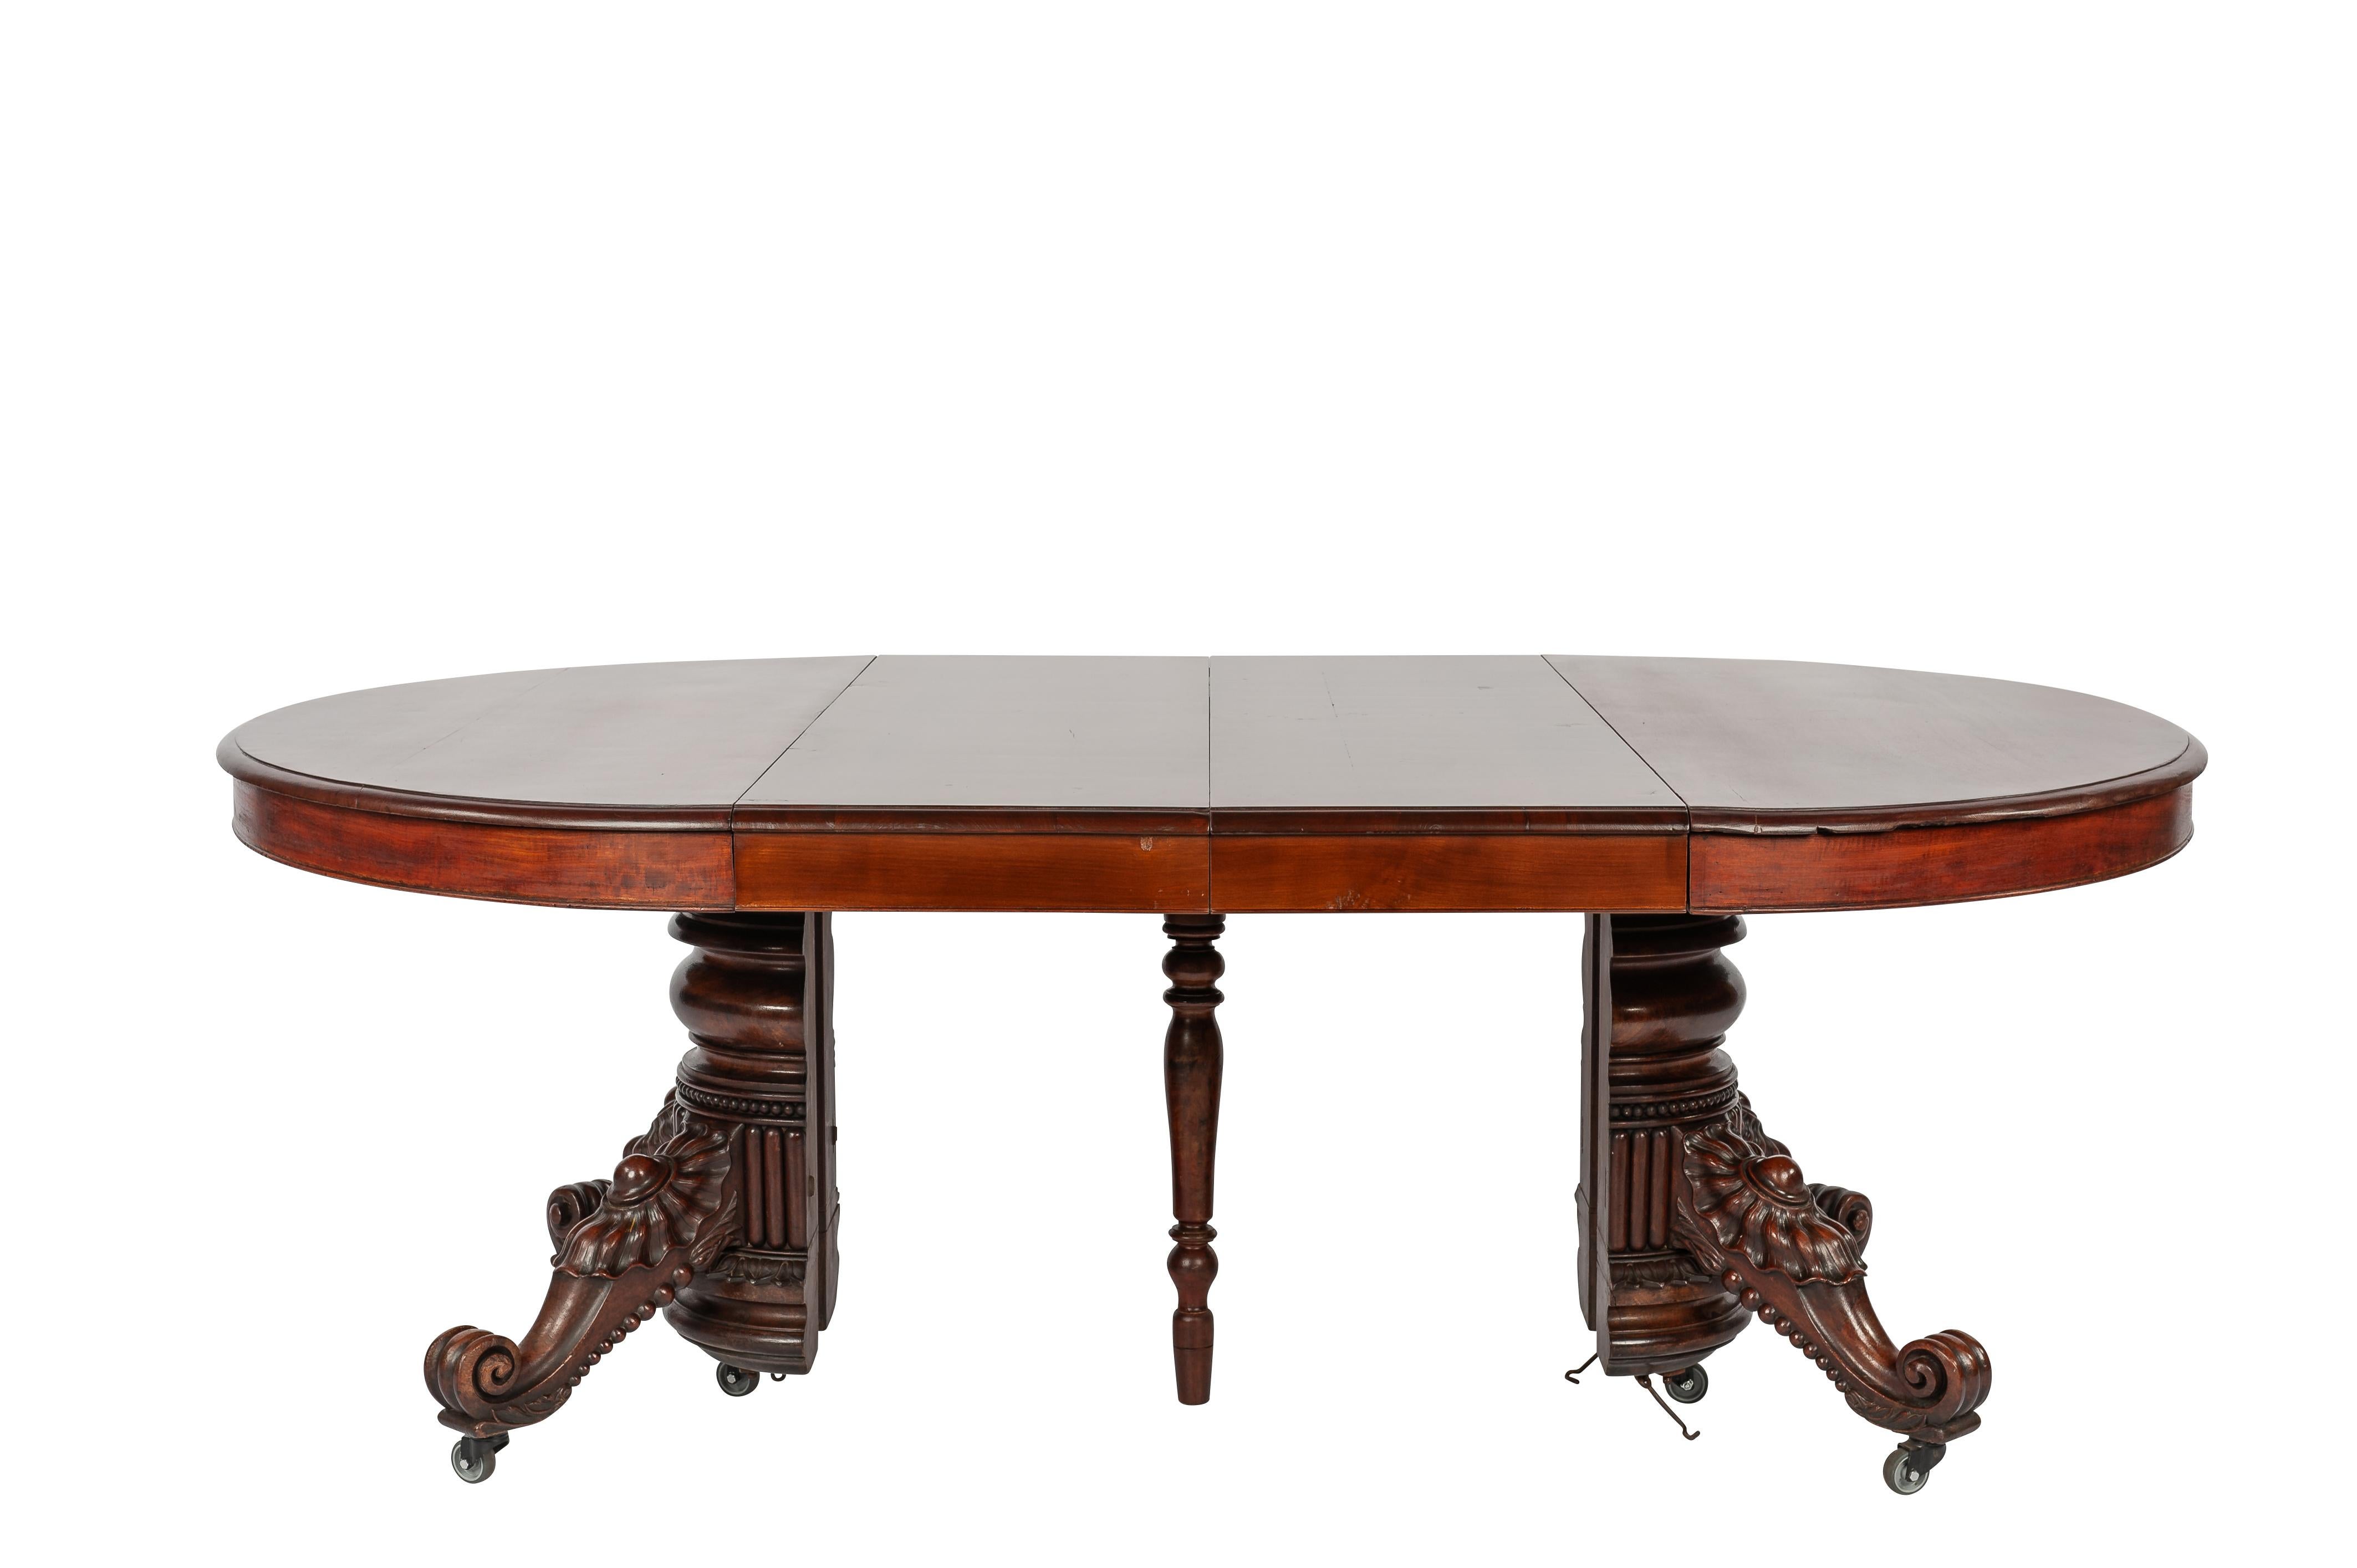 Nous vous proposons ici une exquise table de salle à manger ovale extensible, fabriquée avec soin dans le centre de la France vers 1880. Cette pièce extraordinaire est dotée d'un piédestal central, sculpté à la perfection. Grâce à un système